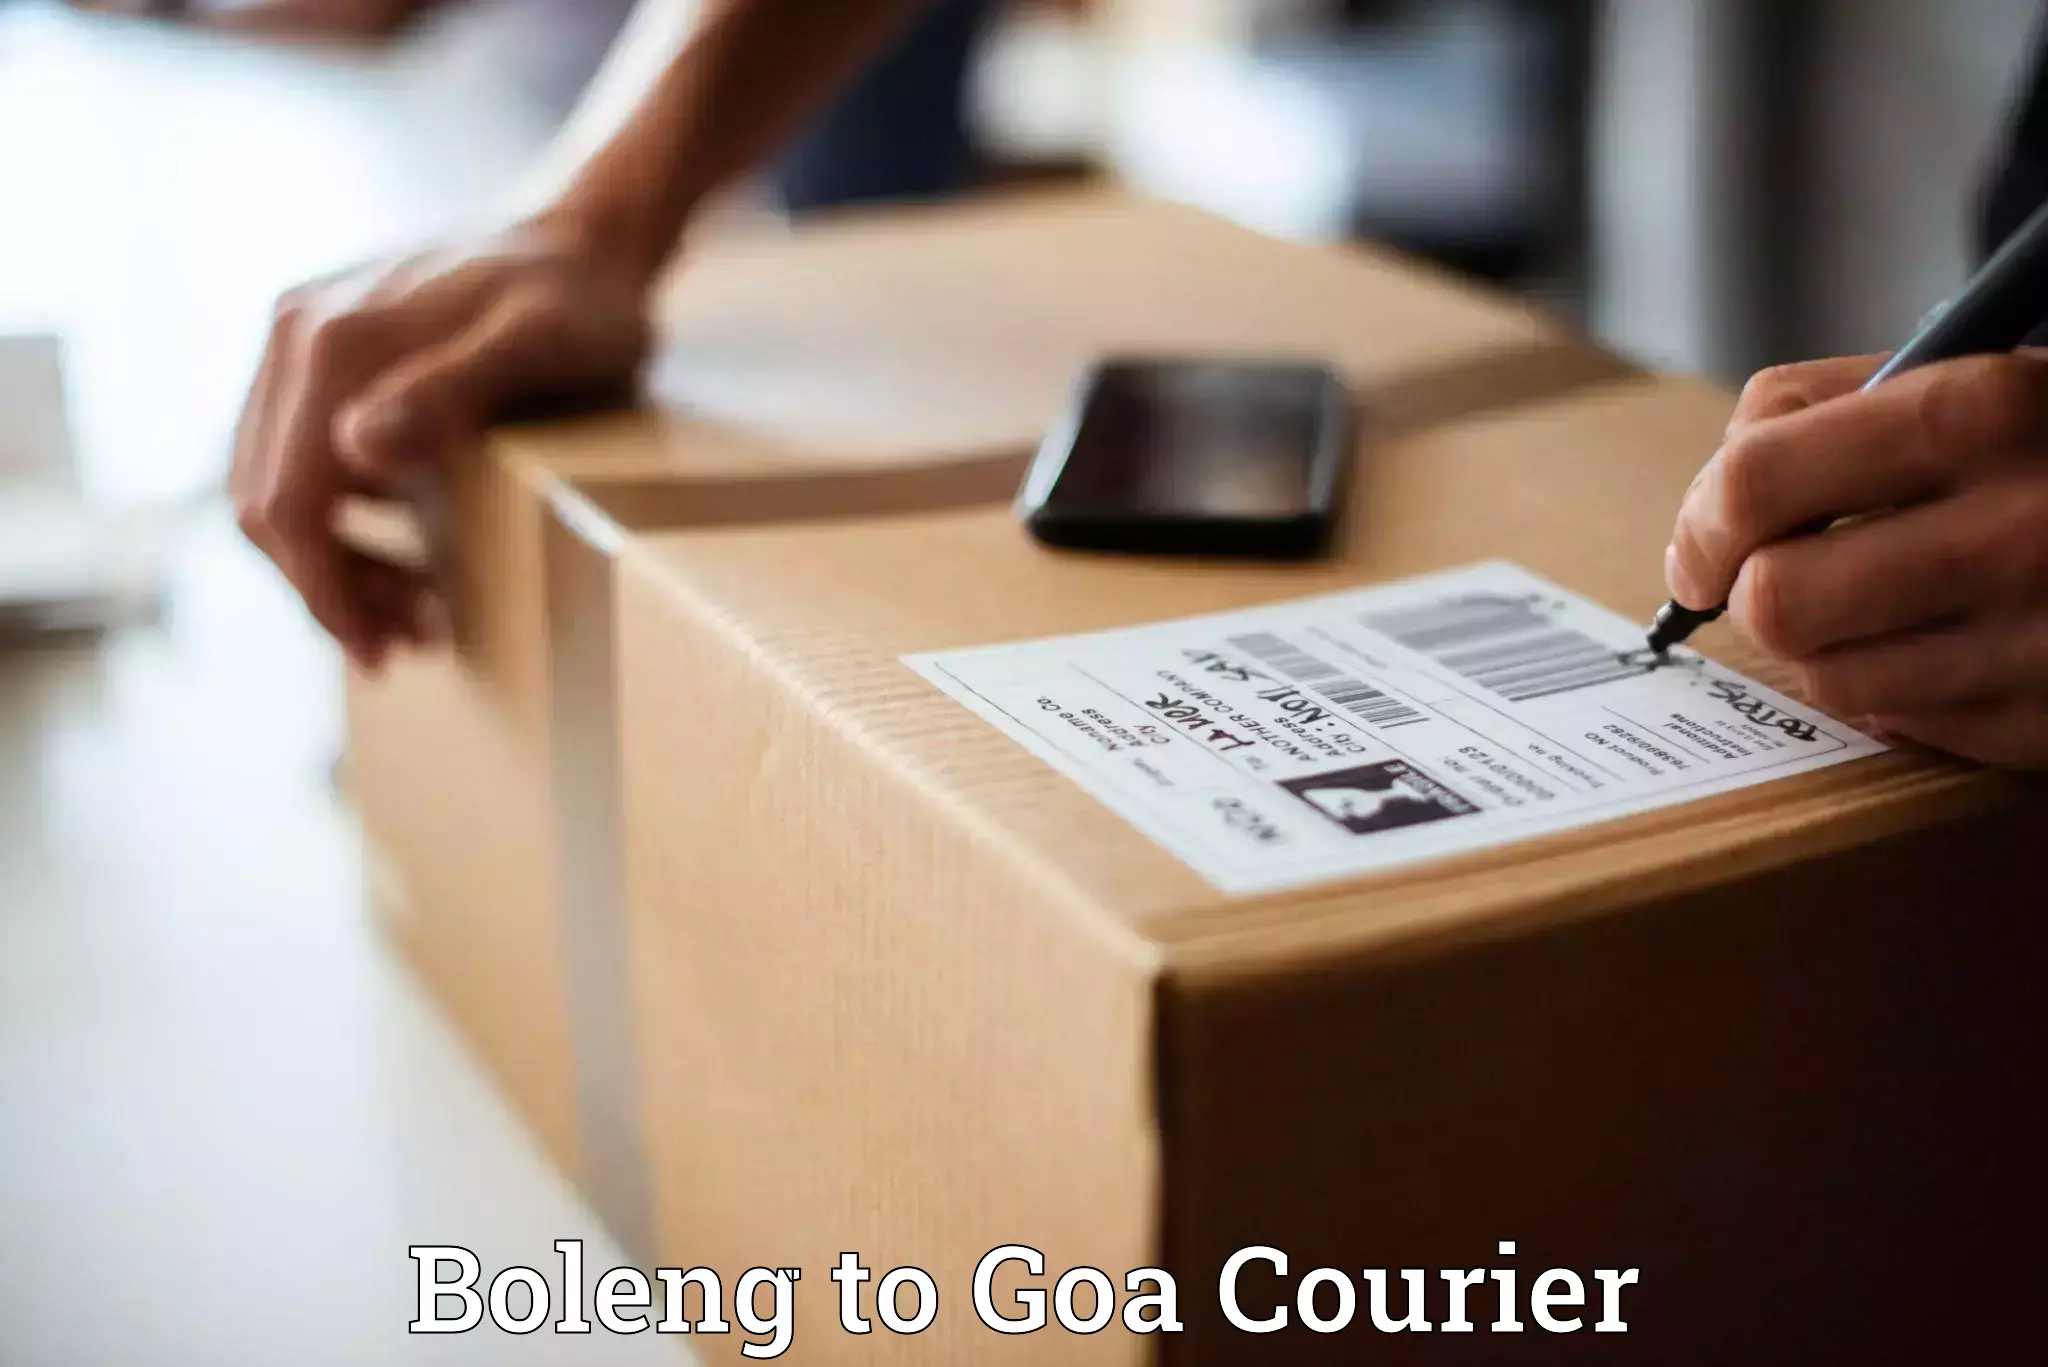 Courier app Boleng to Mormugao Port